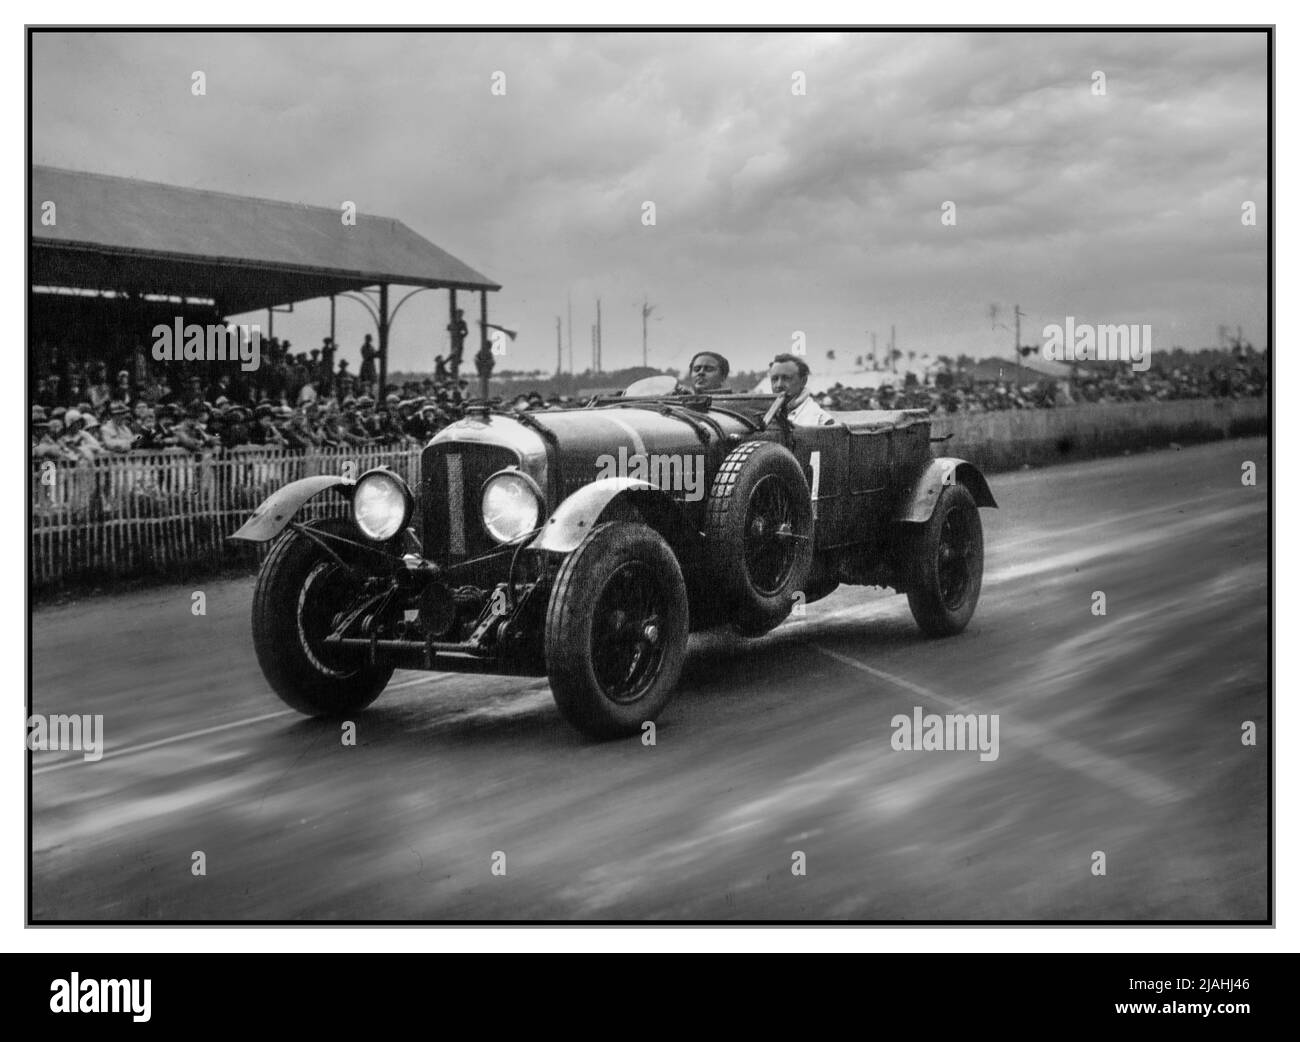 1929 JAHRGANG LE MANS 24 HRS BENTLEY SIEGER NUMMER 1 von Barnato und Birkin 1929 24 Stunden von Le Mans die 1929 24 Stunden von Le Mans waren der Grand Prix of Endurance 7., der am 15. Und 16. Juni 1929 auf dem Circuit de la Sarthe stattfand Bentley war das bisher dominanteste Rennen im Rennen und erzielte einen umfassenden Sieg über die ersten vier Plätze auf Distanz. Bentley-Direktor Woolf Barnato wiederholte seinen Sieg des Vorjahres, der diesmal von seinem Kollegen Bentley Boy Sir Henry „Tim“ Birkin mitgetragen wurde. Sie hatten von Anfang bis Ende geführt und einen neuen Streckenrekord und Rundenrekord aufgestellt. Stockfoto